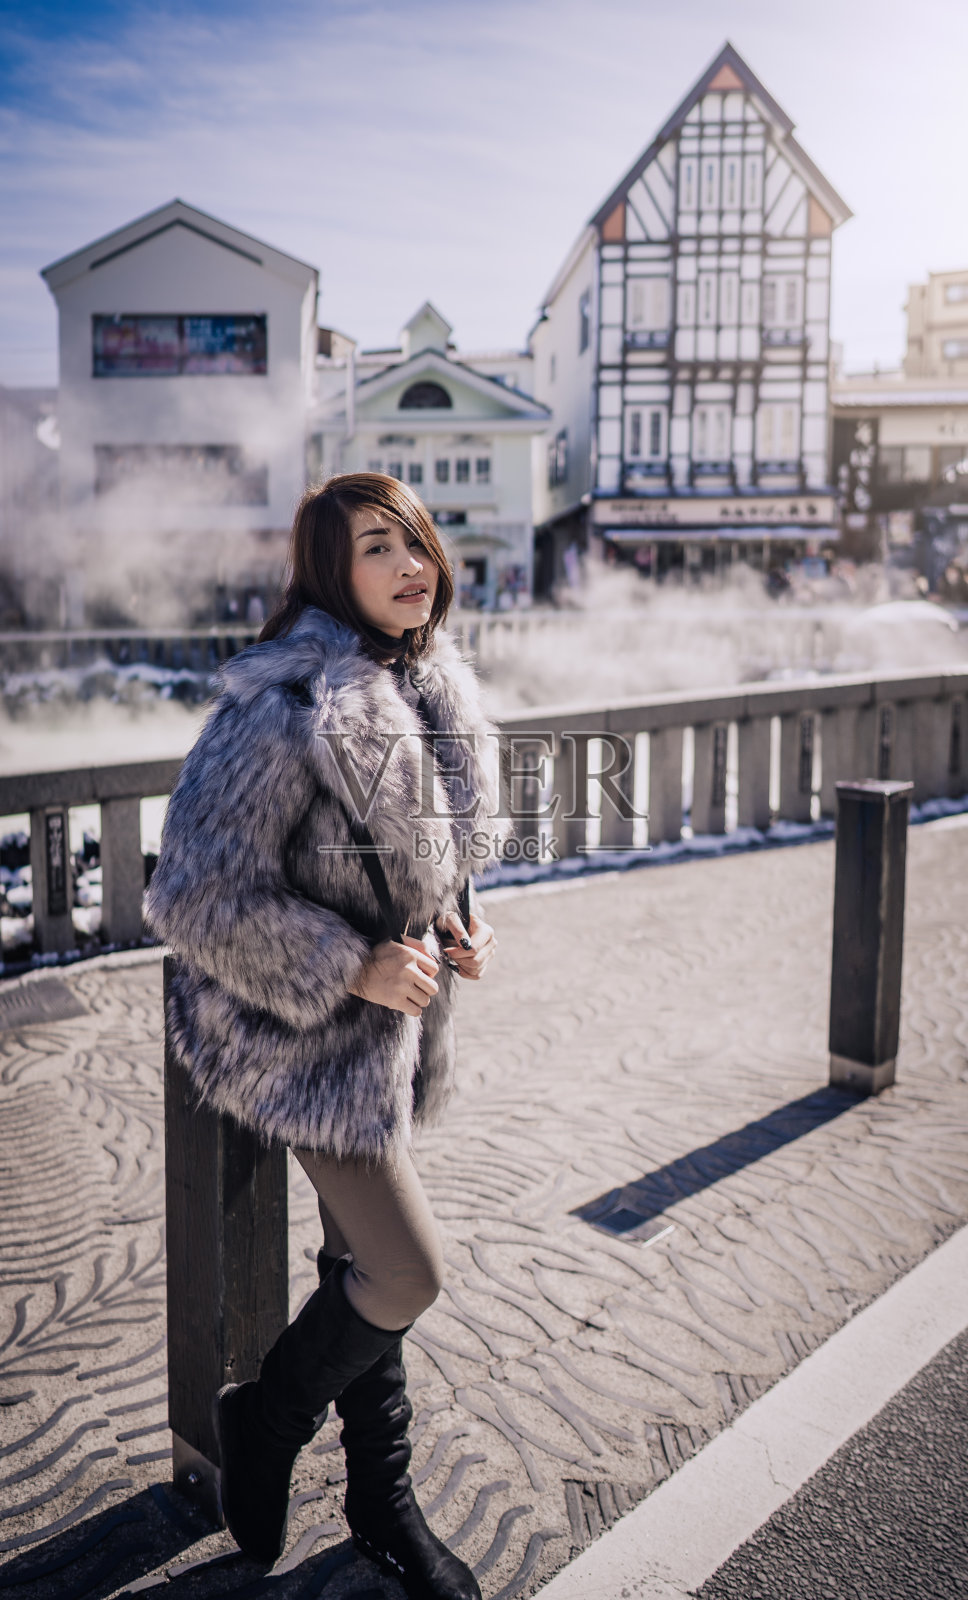 日本冬季草津温泉村的美女照片摄影图片